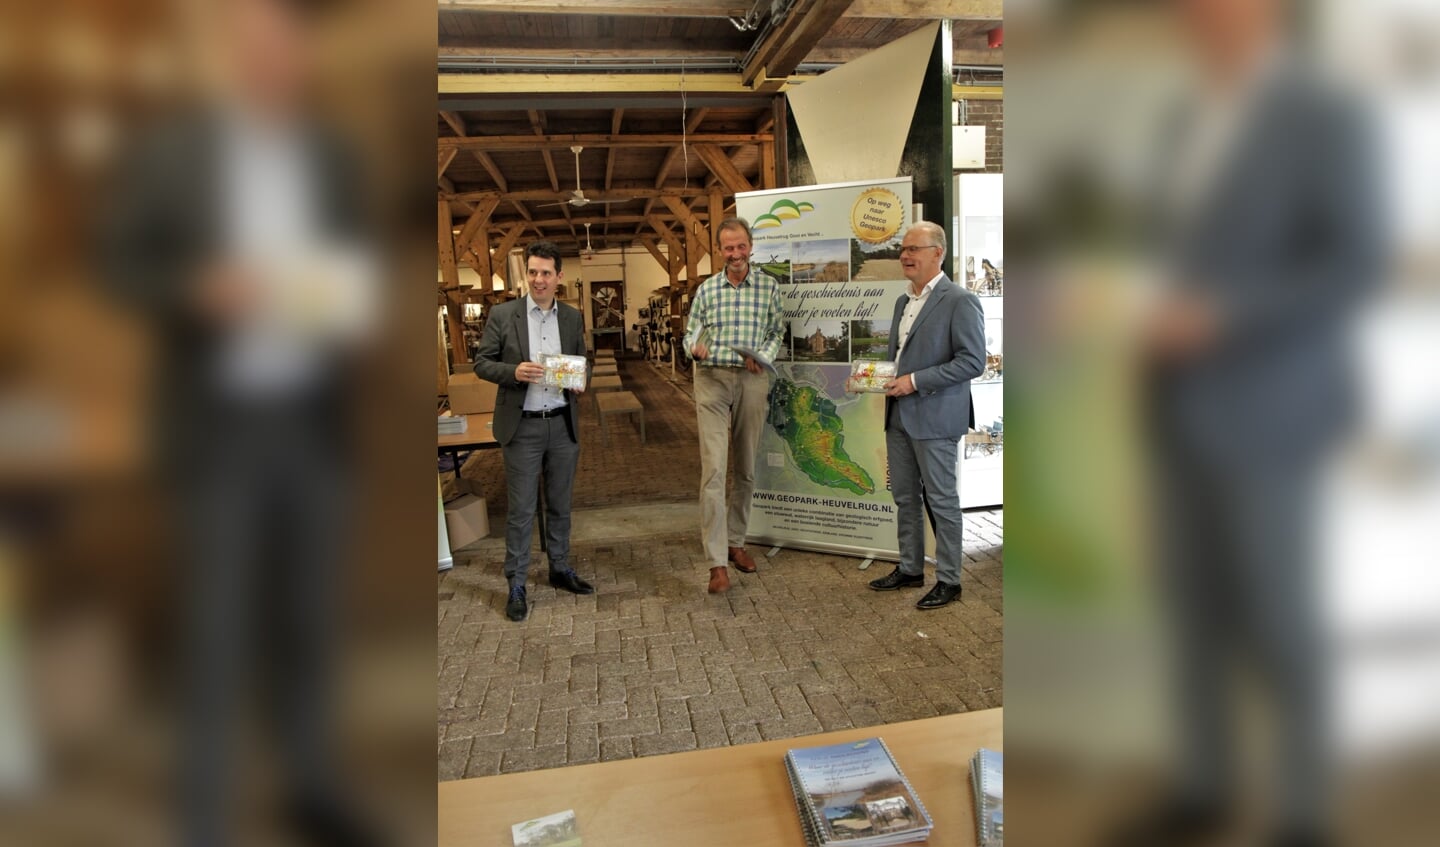 De eerste Ontdekkaarten en Informatieboekjes worden uitgereikt aan Maarten van Dijk, wethouder van Stichtse Vecht (l) en Peter Smit, bestuurder van Waterschap Amstel Gooi en Vecht door Marc Hofstra van Geopark (m).